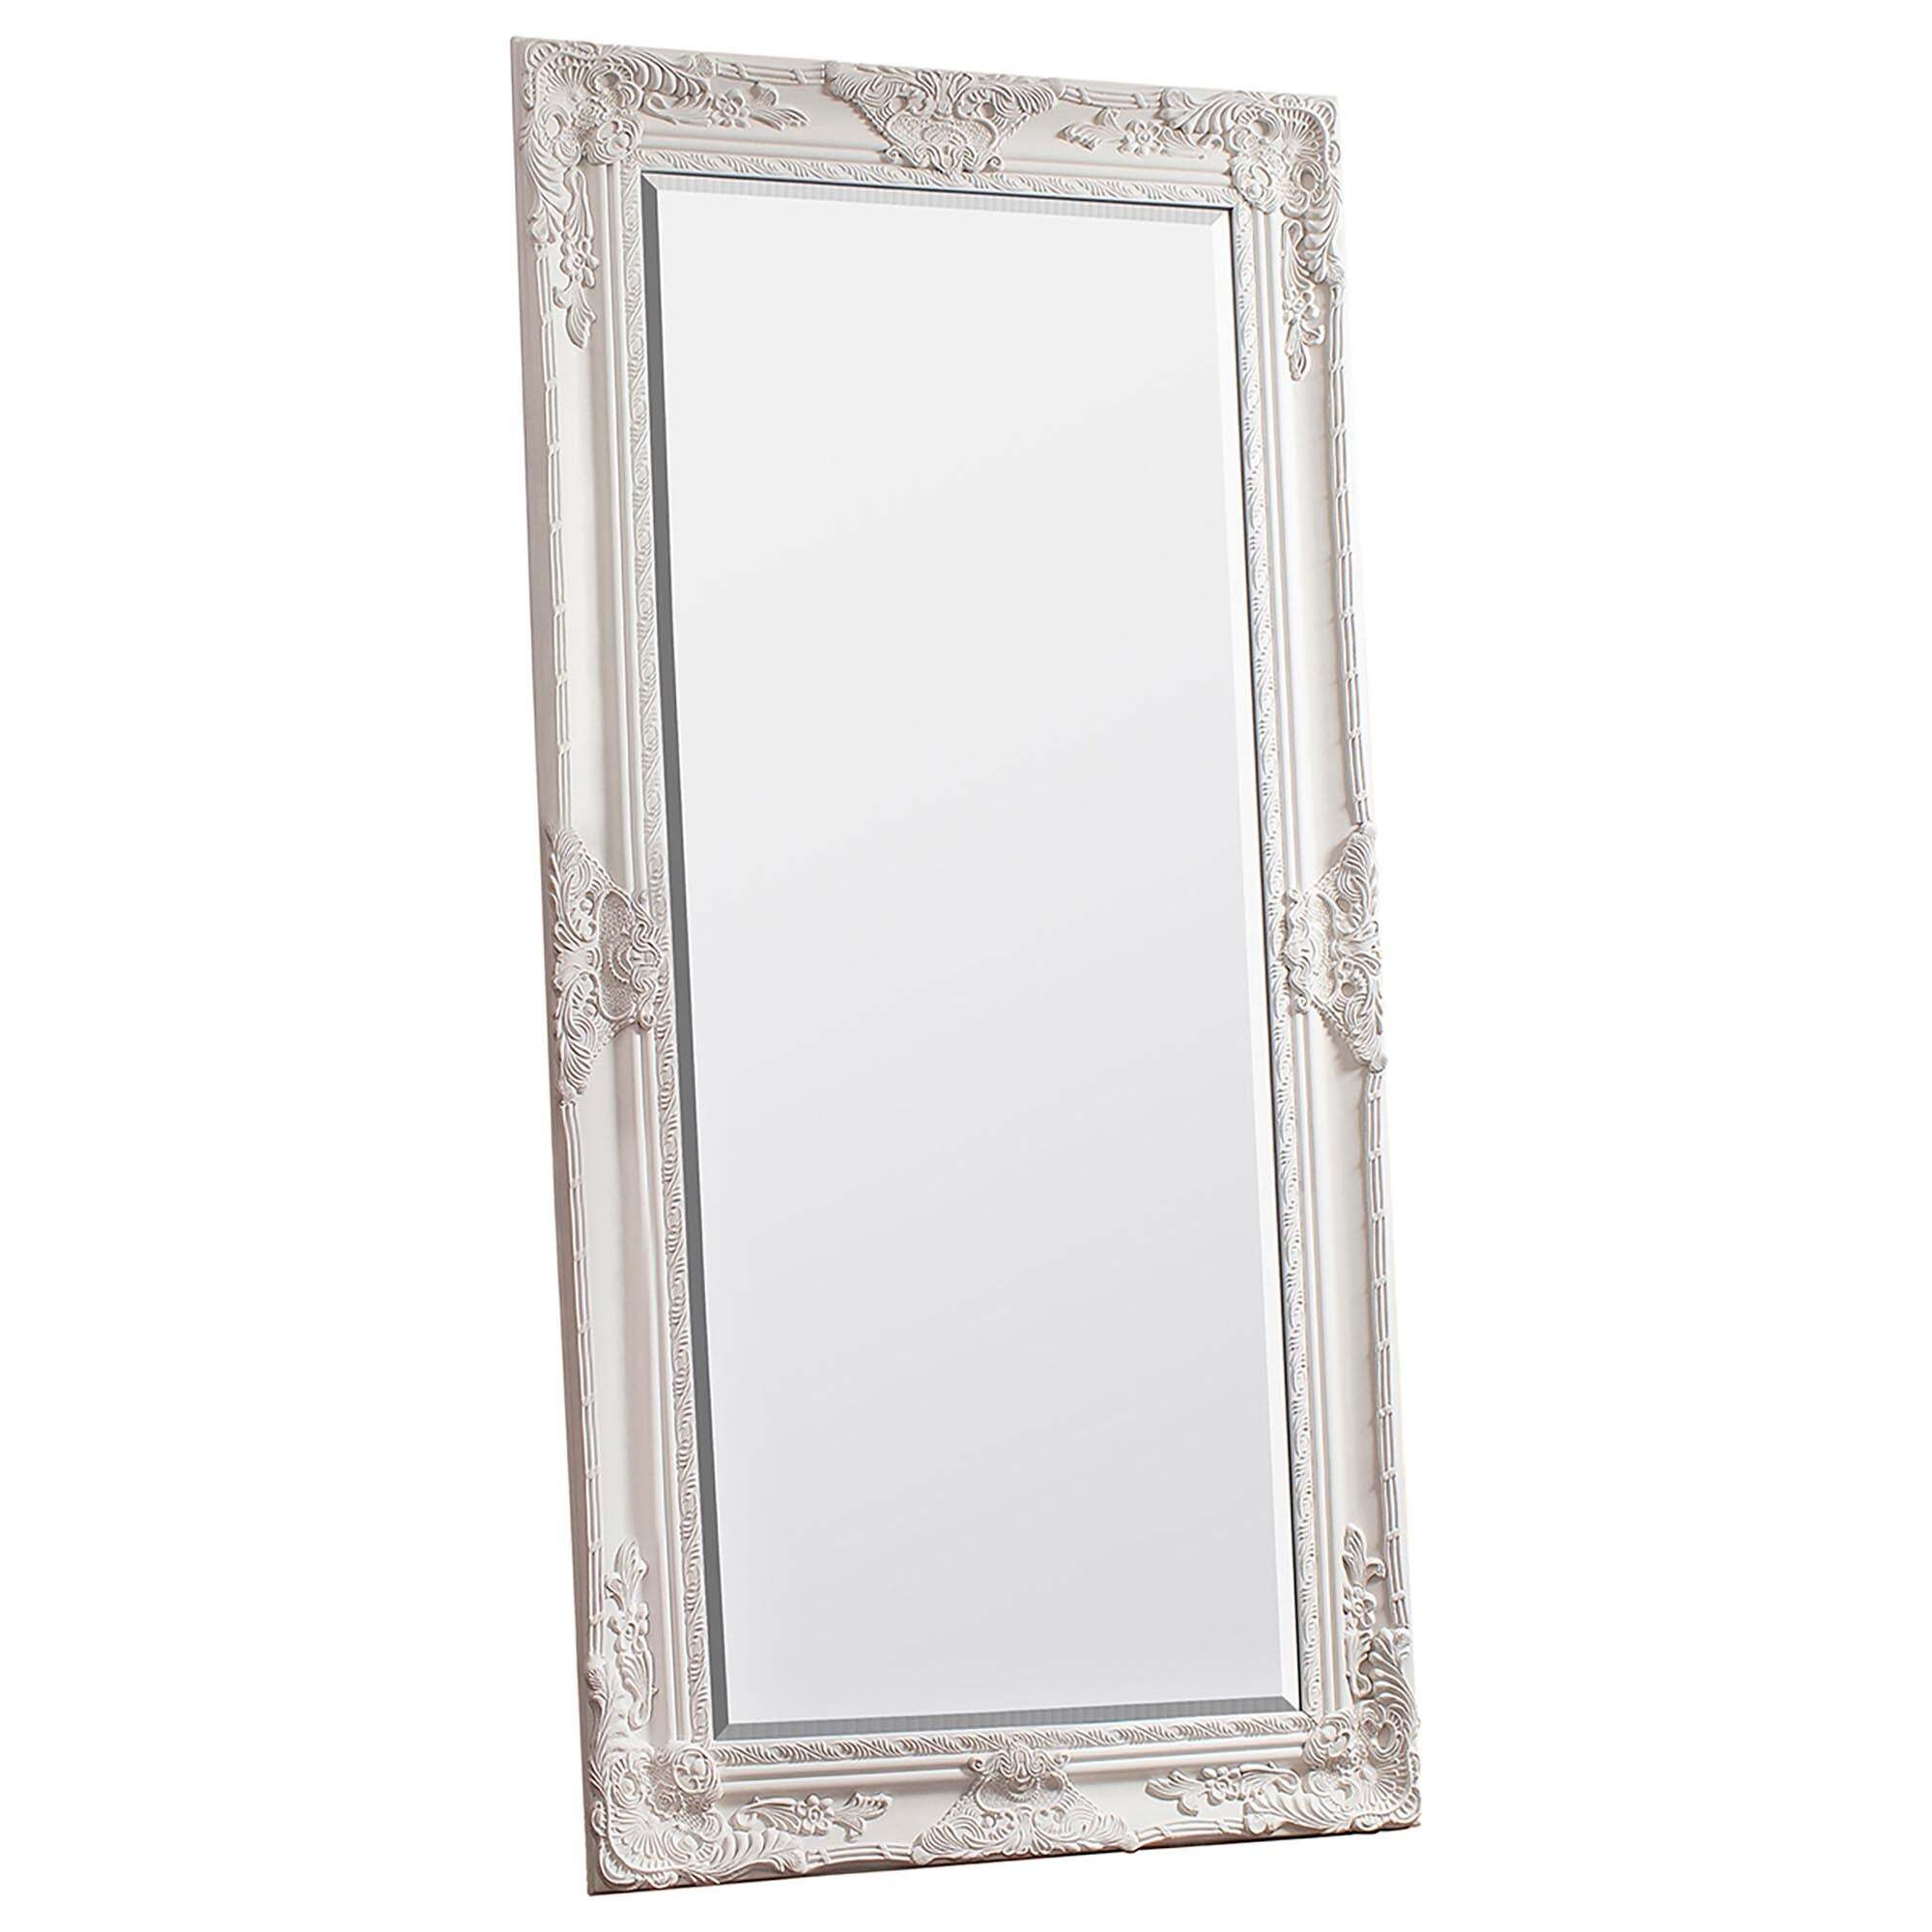 Augusta Leaner Mirror, Cream 84x170cm Cream